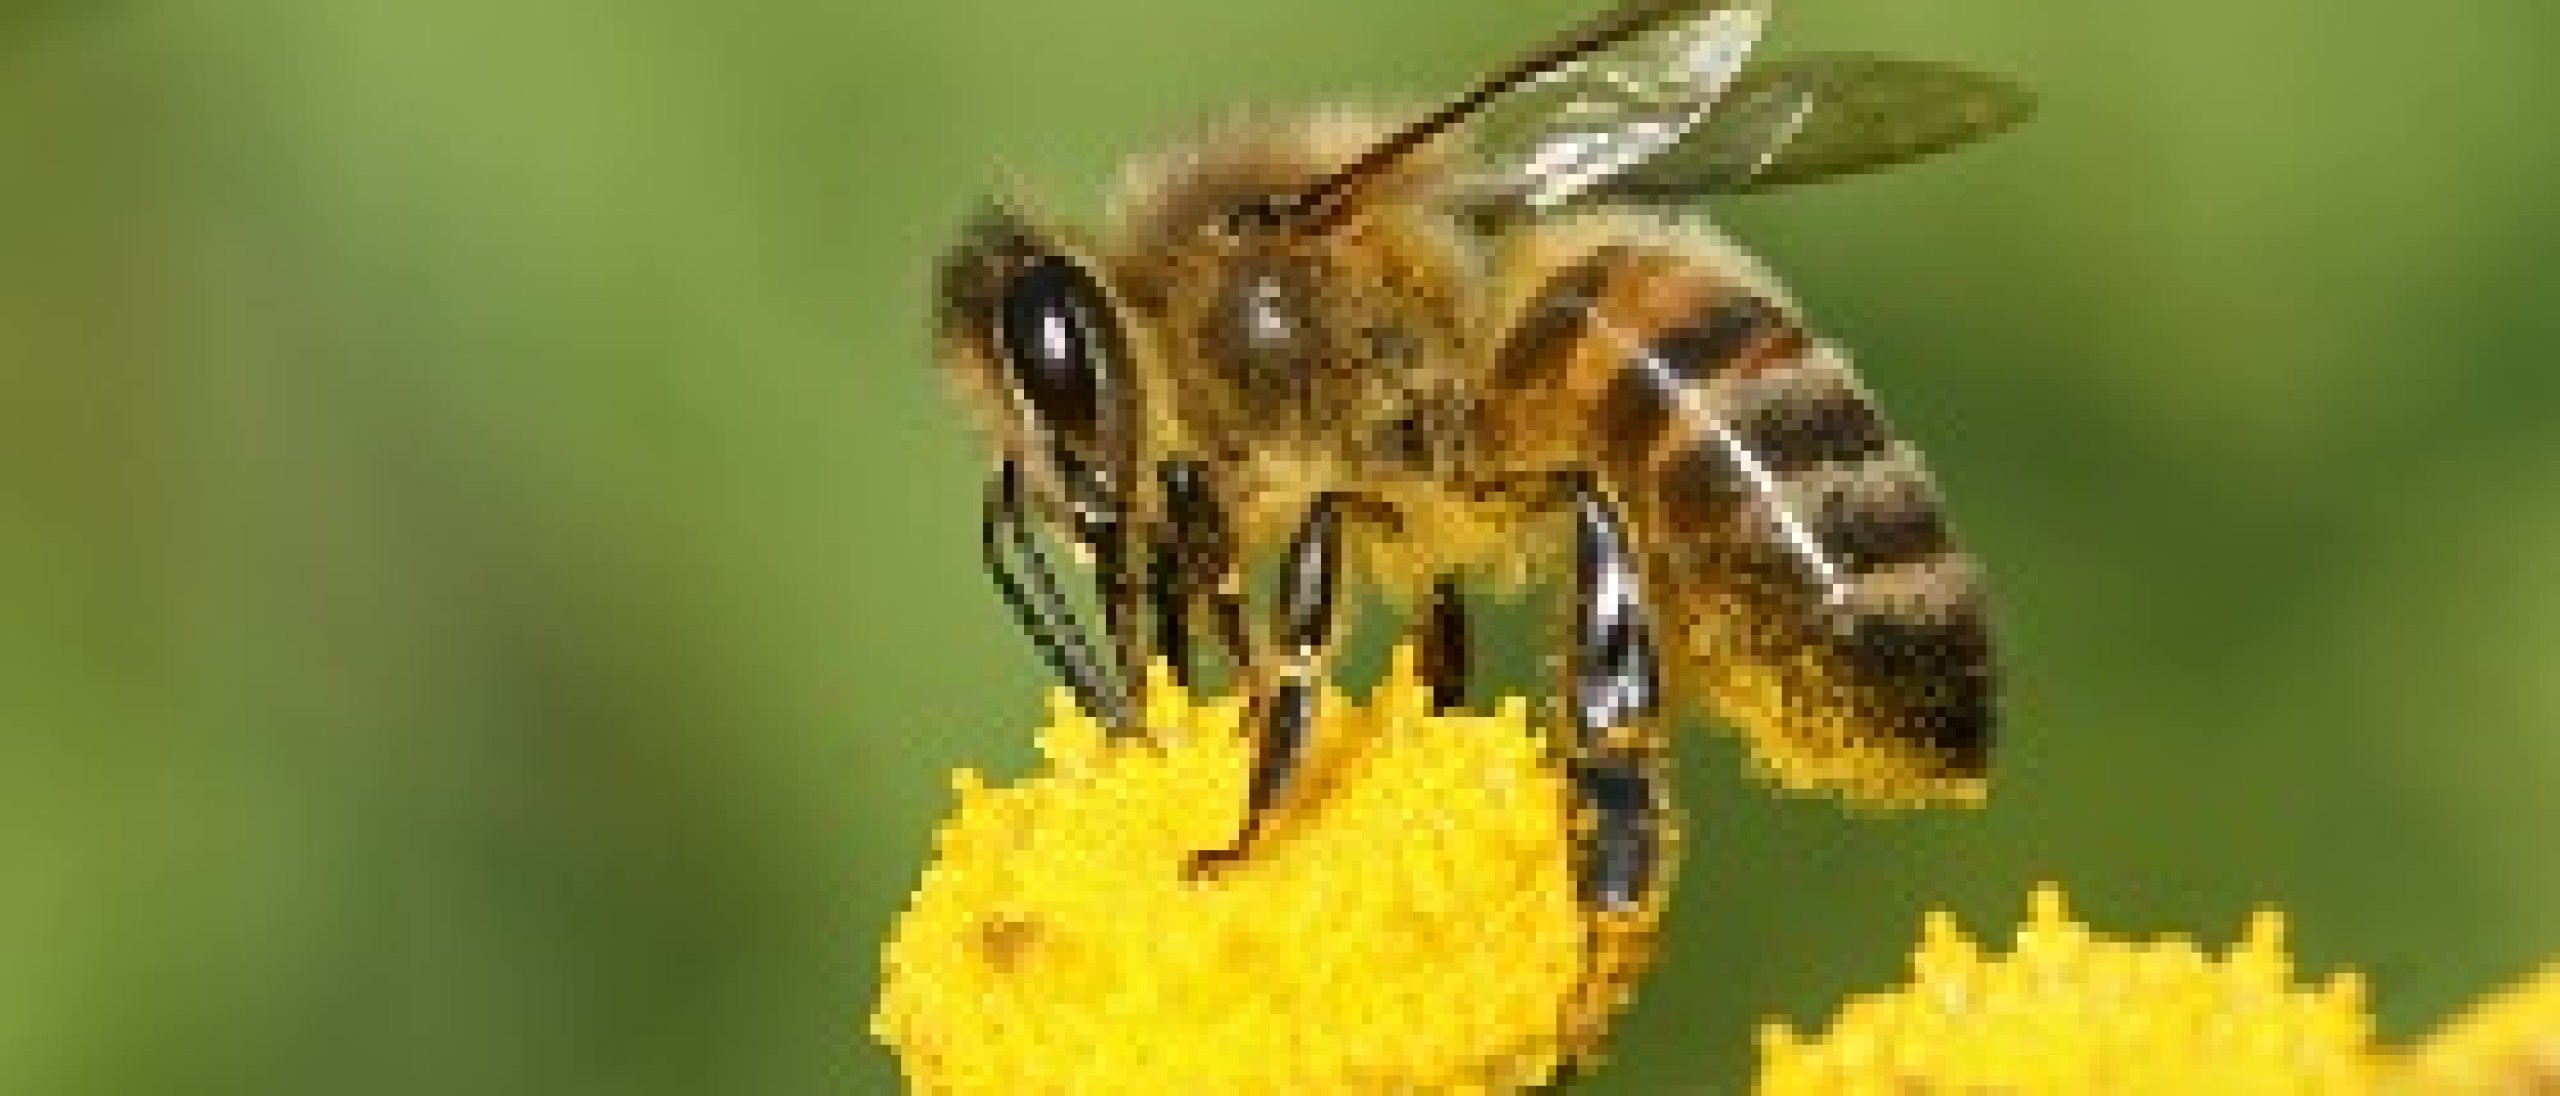 Raadselachtige honingbijen sterfte met link naar gif?